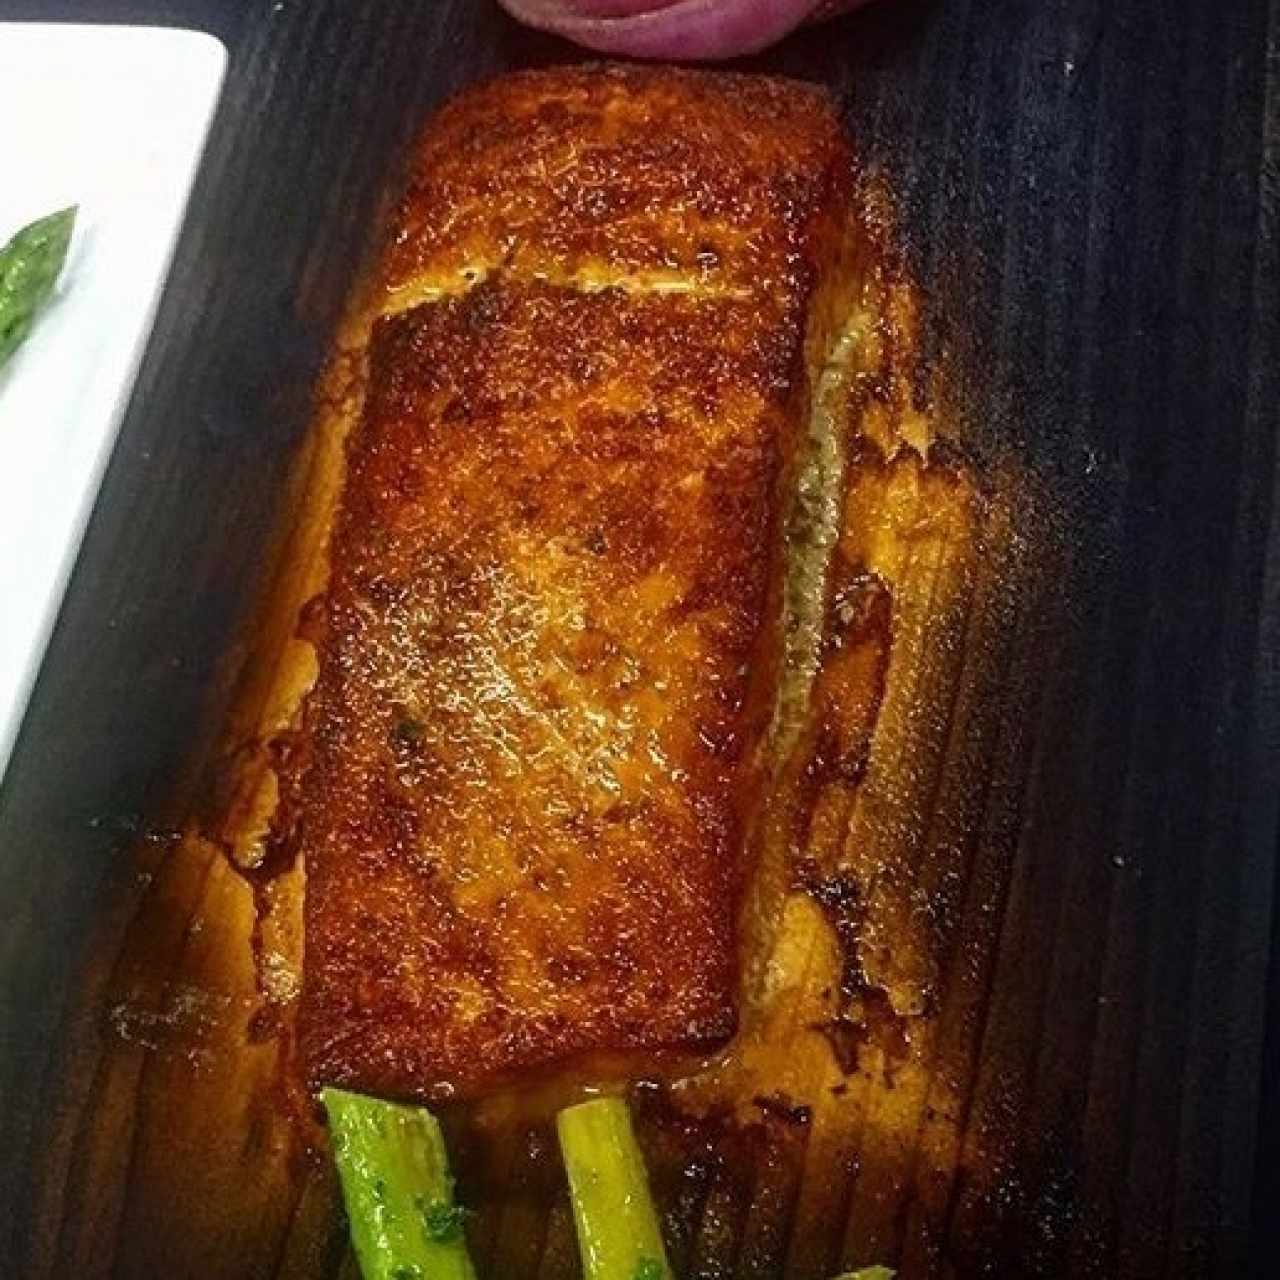 salmon ahumado!